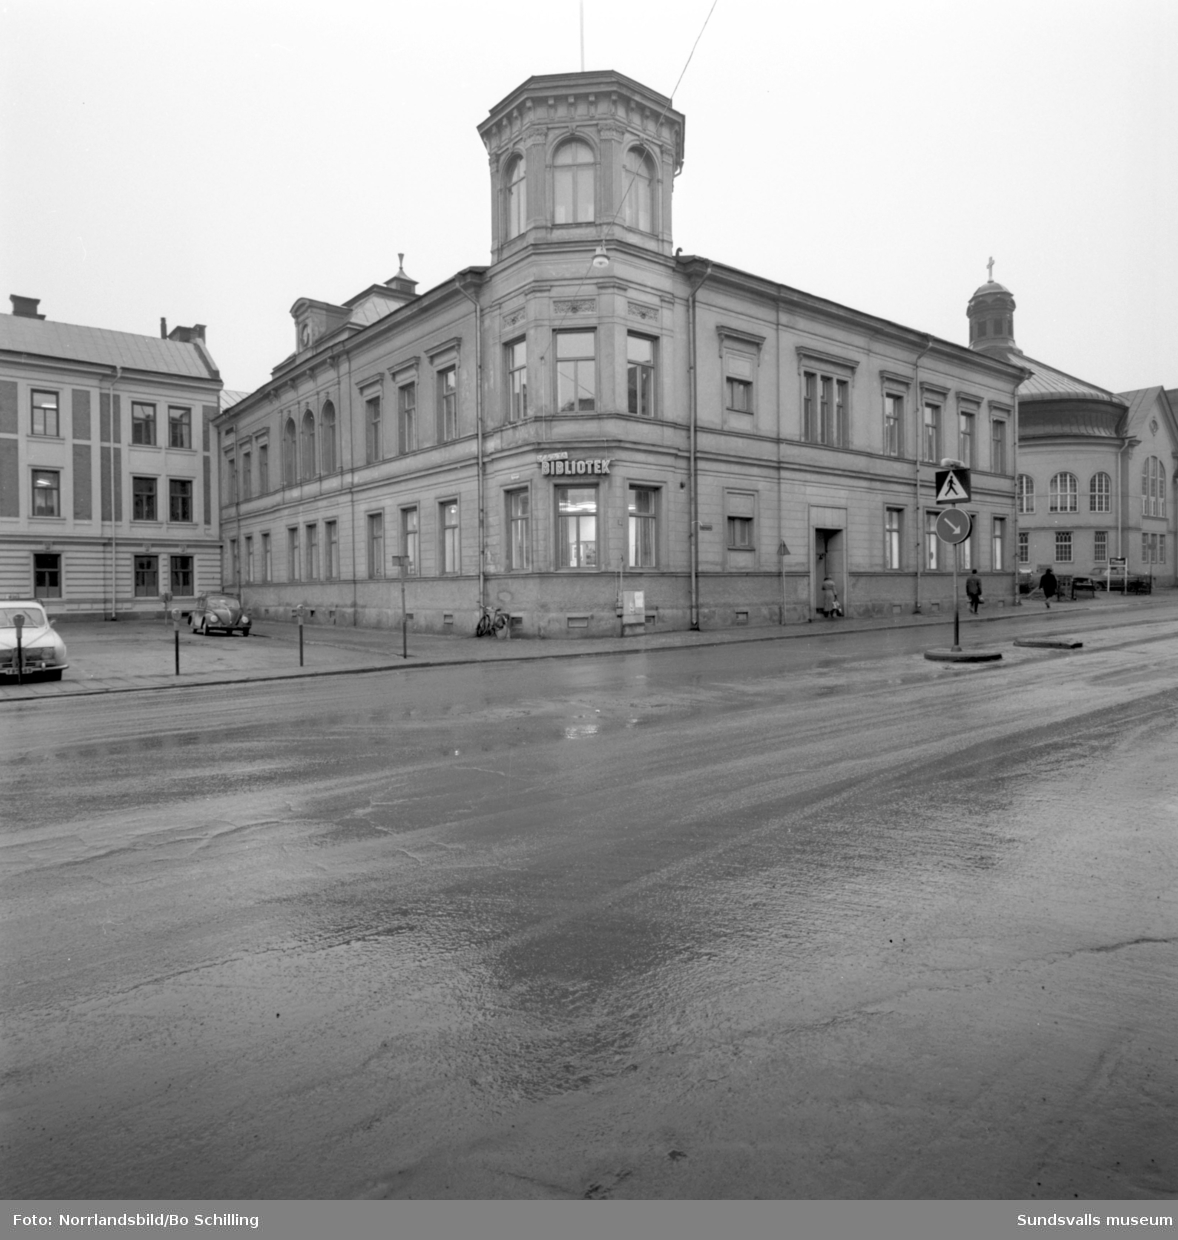 Exteriörbild av Sundsvalls stadsbibliotek på Köpmangatan 15.